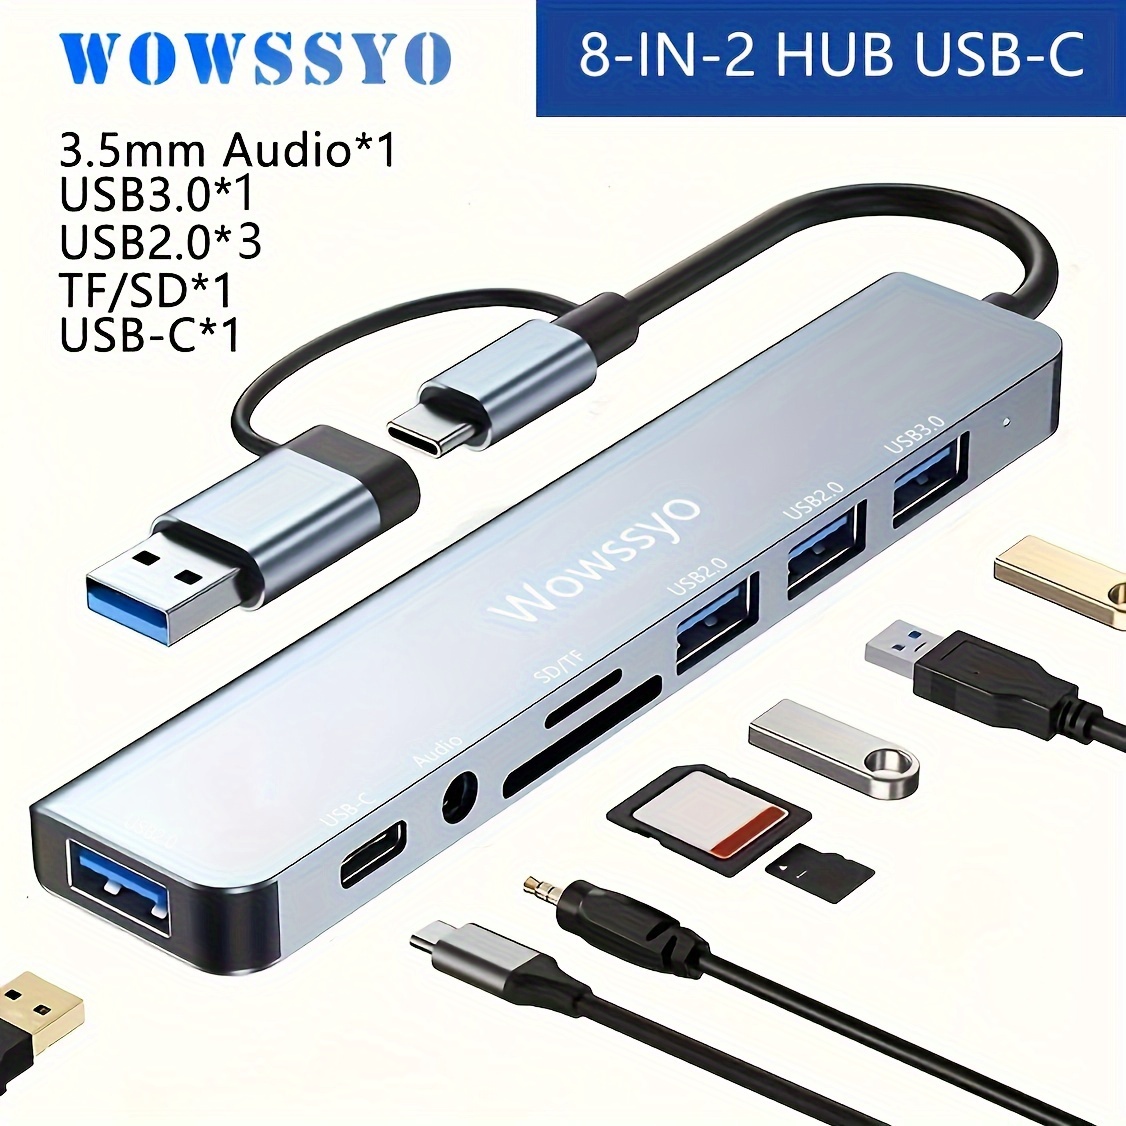 

Incroyable USB C 8 En 1, Adaptateur USB C Pour MacBook Pro/Air, HDTV 4K, Audio SD/TF USB 3.0 / 2.0, Pour , XPS, Pro7/Pro X Chromebook Samsung, Ordinateurs Portables PC